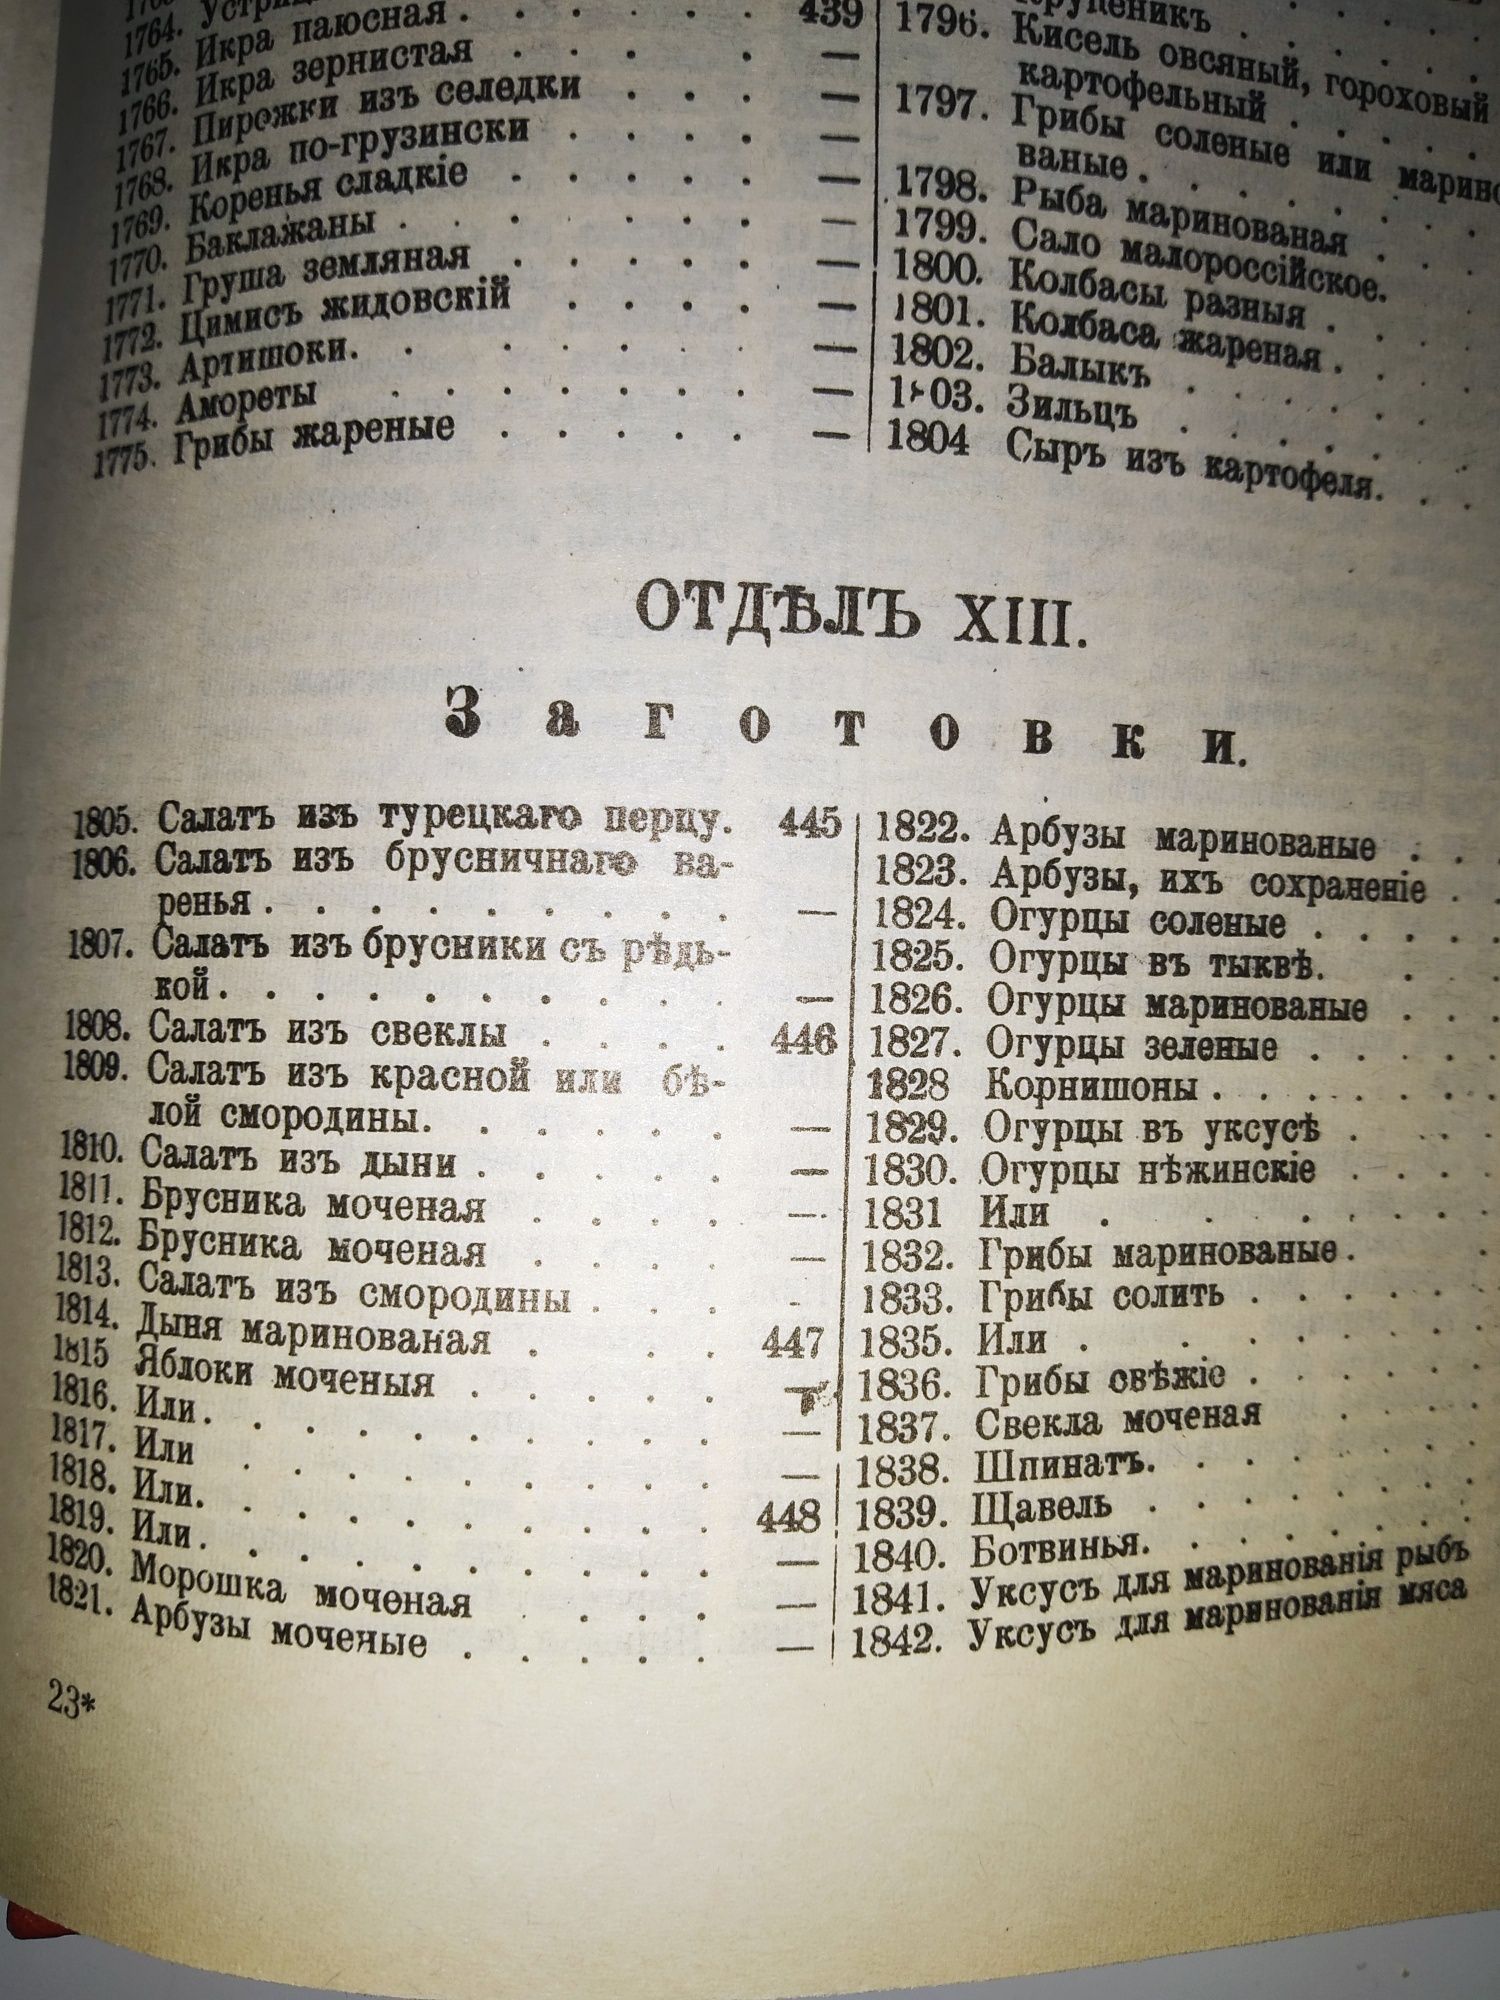 Старинная книга "Образцовая кухня" 1892 репринт